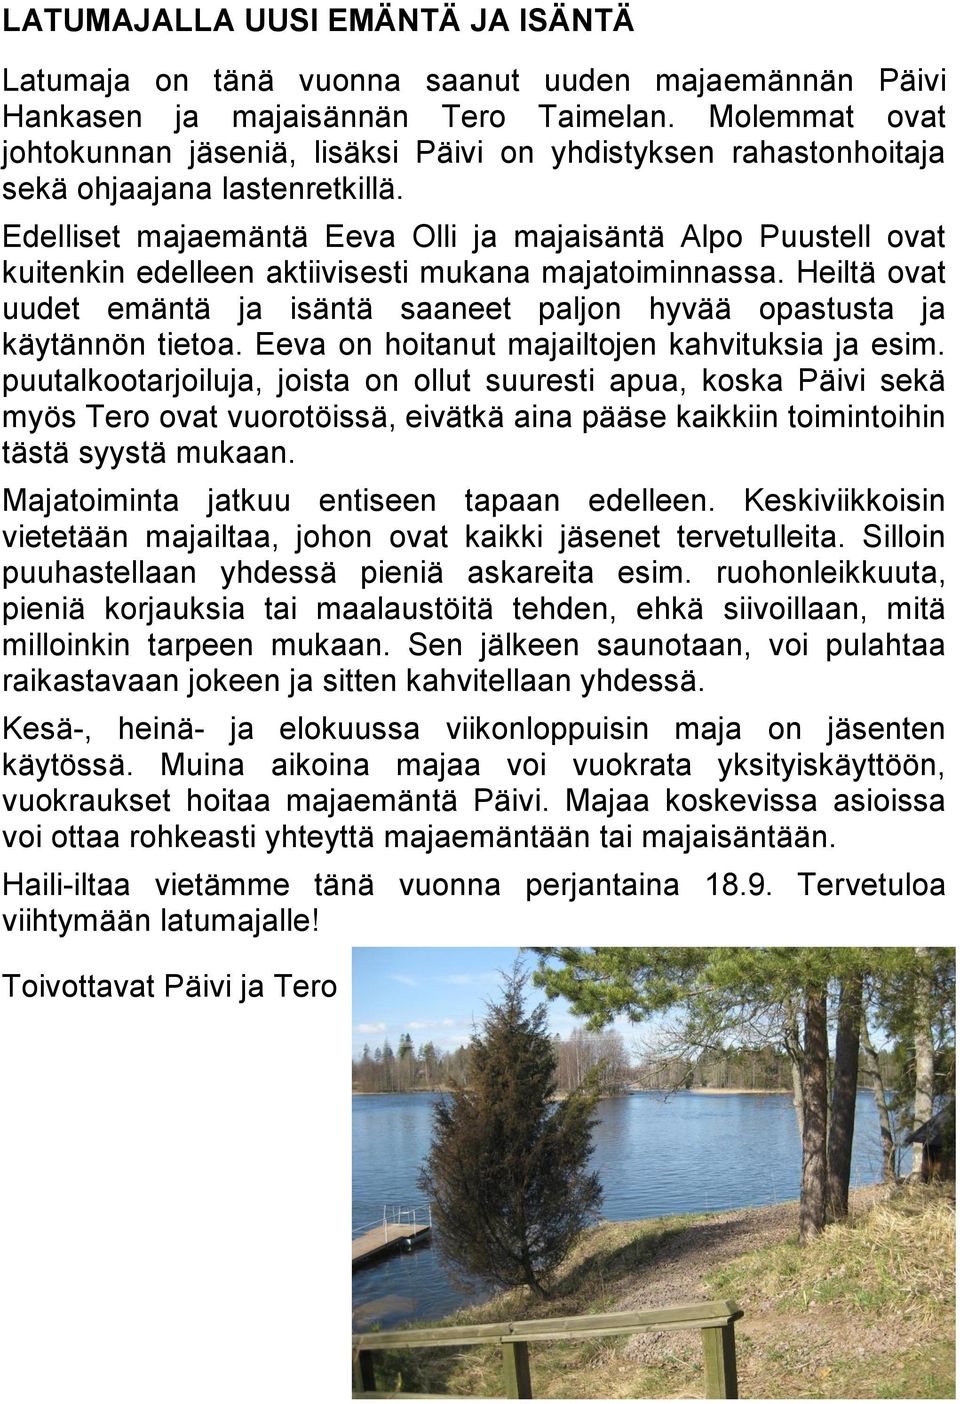 Edelliset majaemäntä Eeva Olli ja majaisäntä Alpo Puustell ovat kuitenkin edelleen aktiivisesti mukana majatoiminnassa.